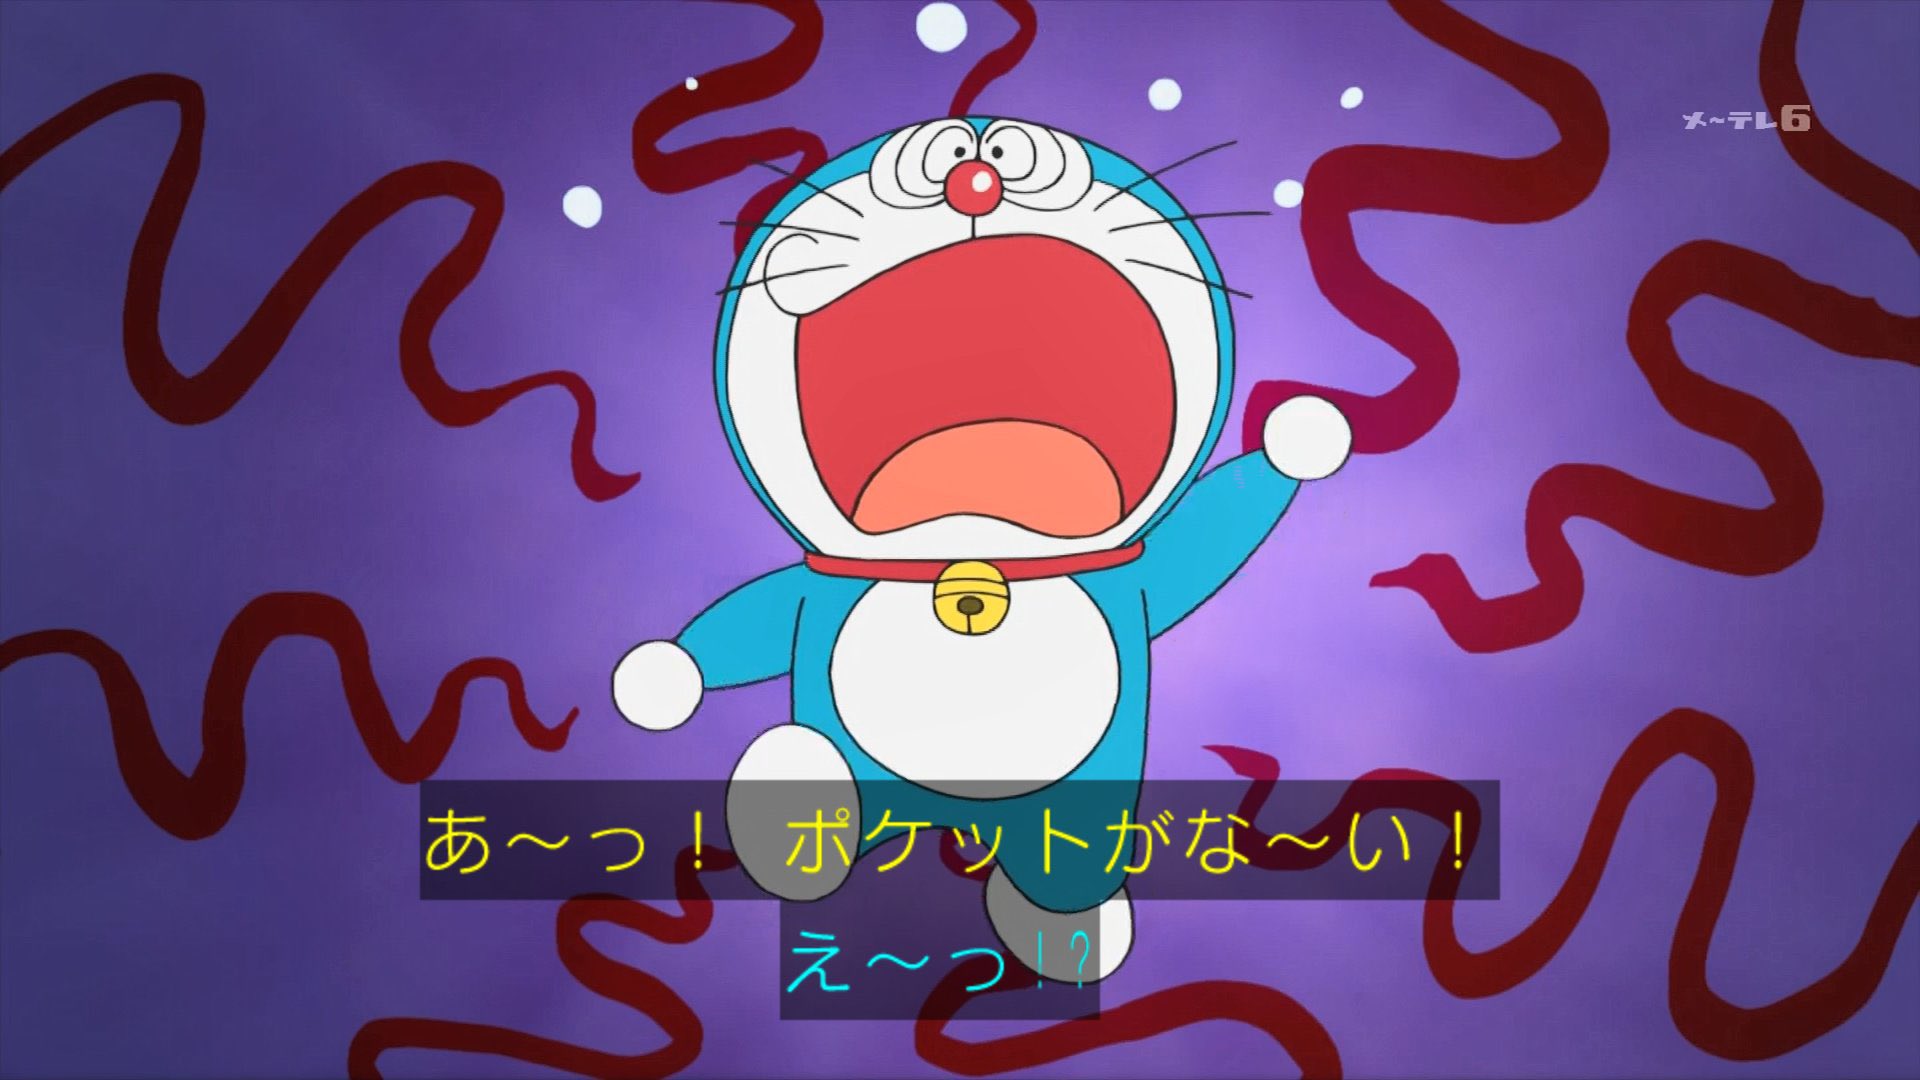 雪だるま 四次元ポケットがないドラえもん久々に観るwww ドラえもん Doraemon T Co Z6cbsqyziy Twitter